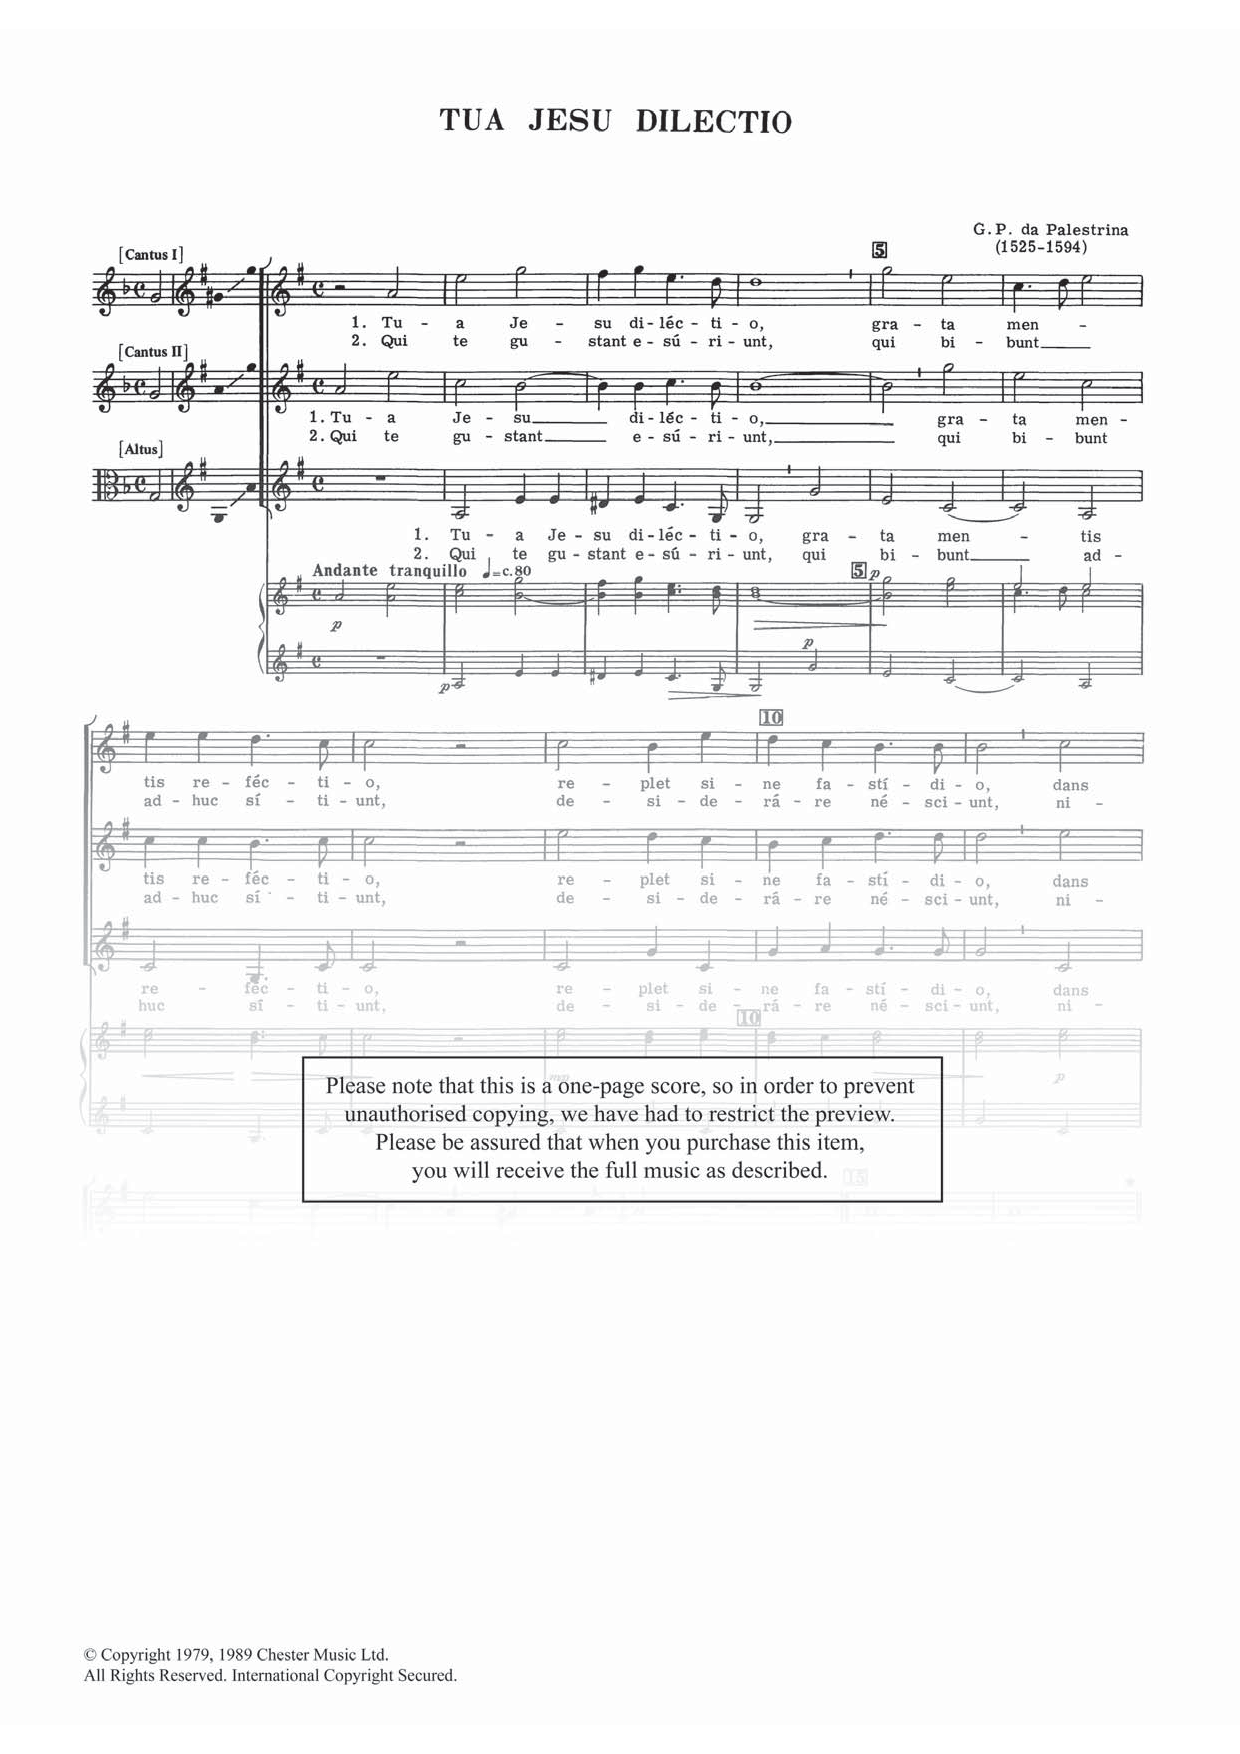 Download Giovanni Palestrina Tua Jesu Dilectio Sheet Music